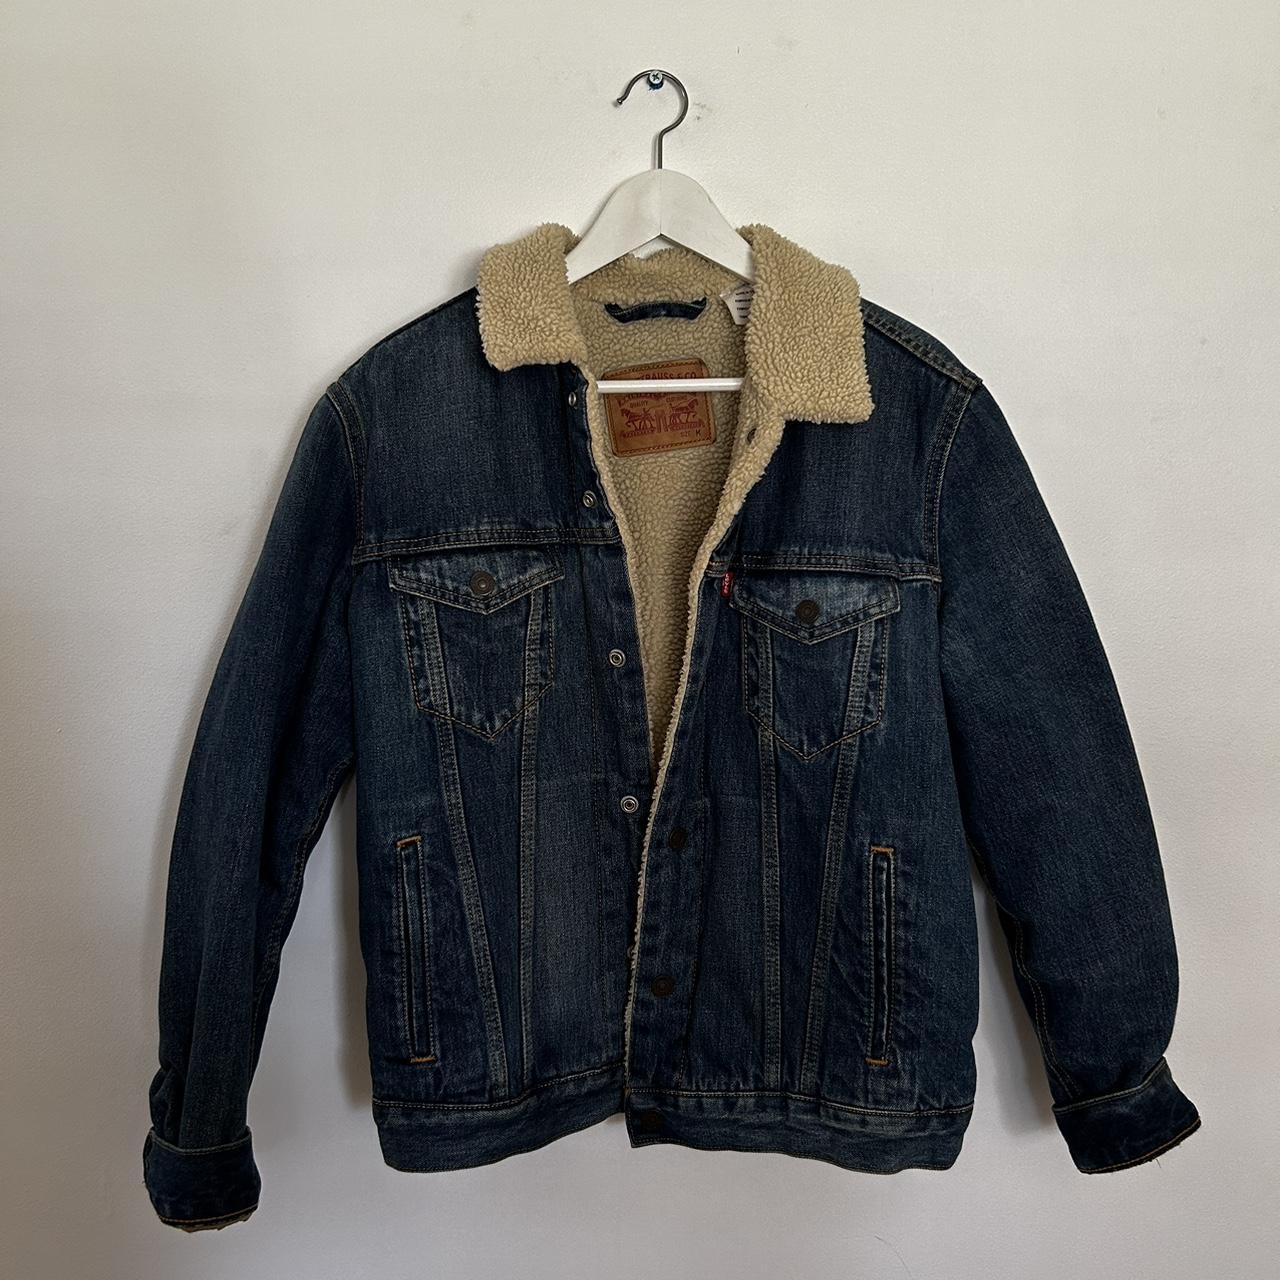 Levis denim jacket #levis #vintage #denim #jacket - Depop